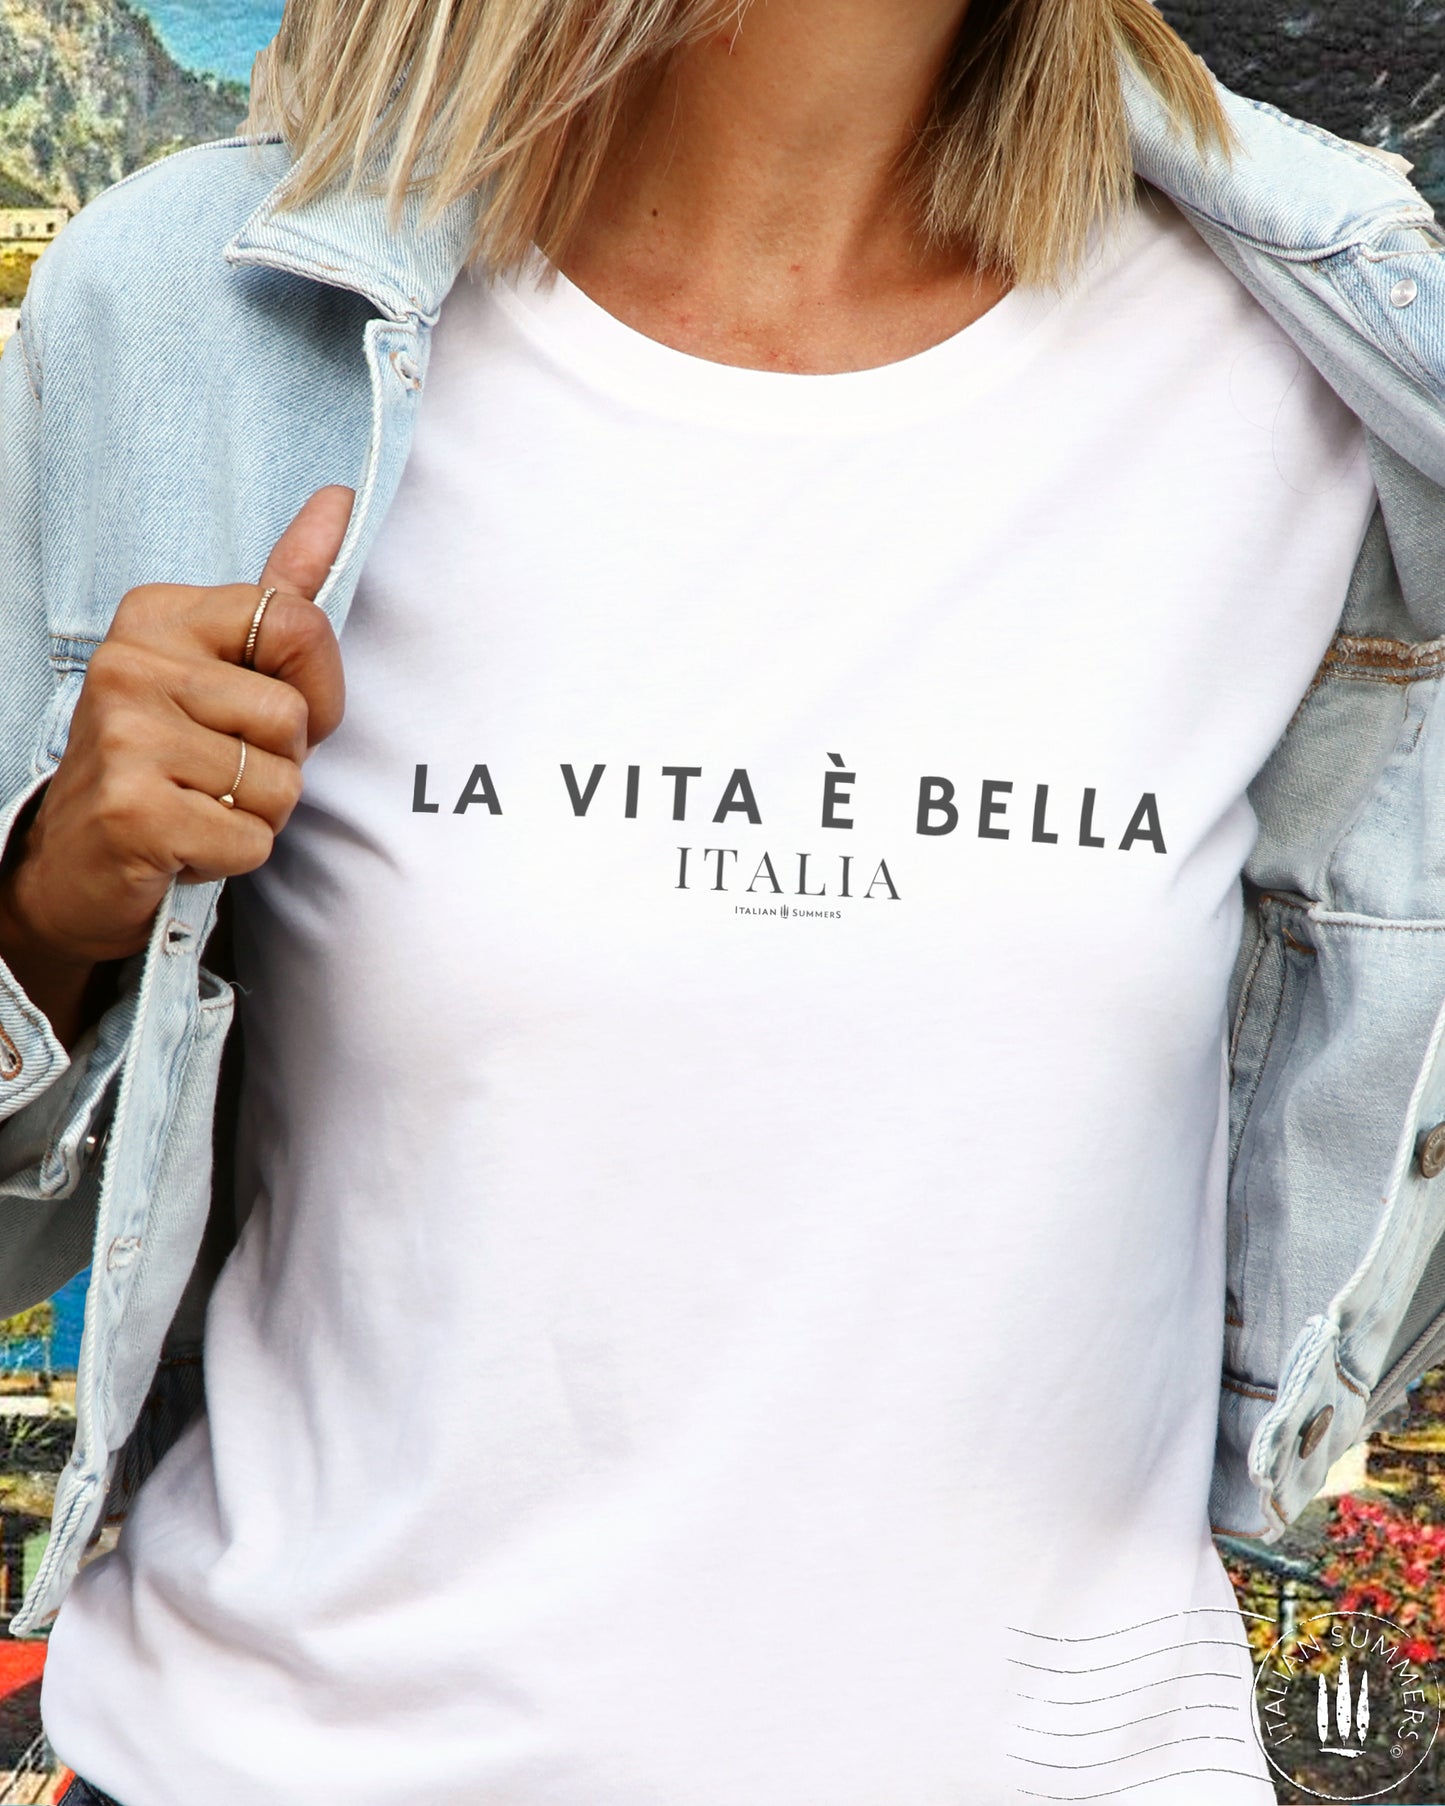 La Vita é bella Italy t-shirt | Life is beautiful, Italy shirt, Italy quote, Italy gift, Italy souvenir, Italy theme, Italy traveller, Ciao